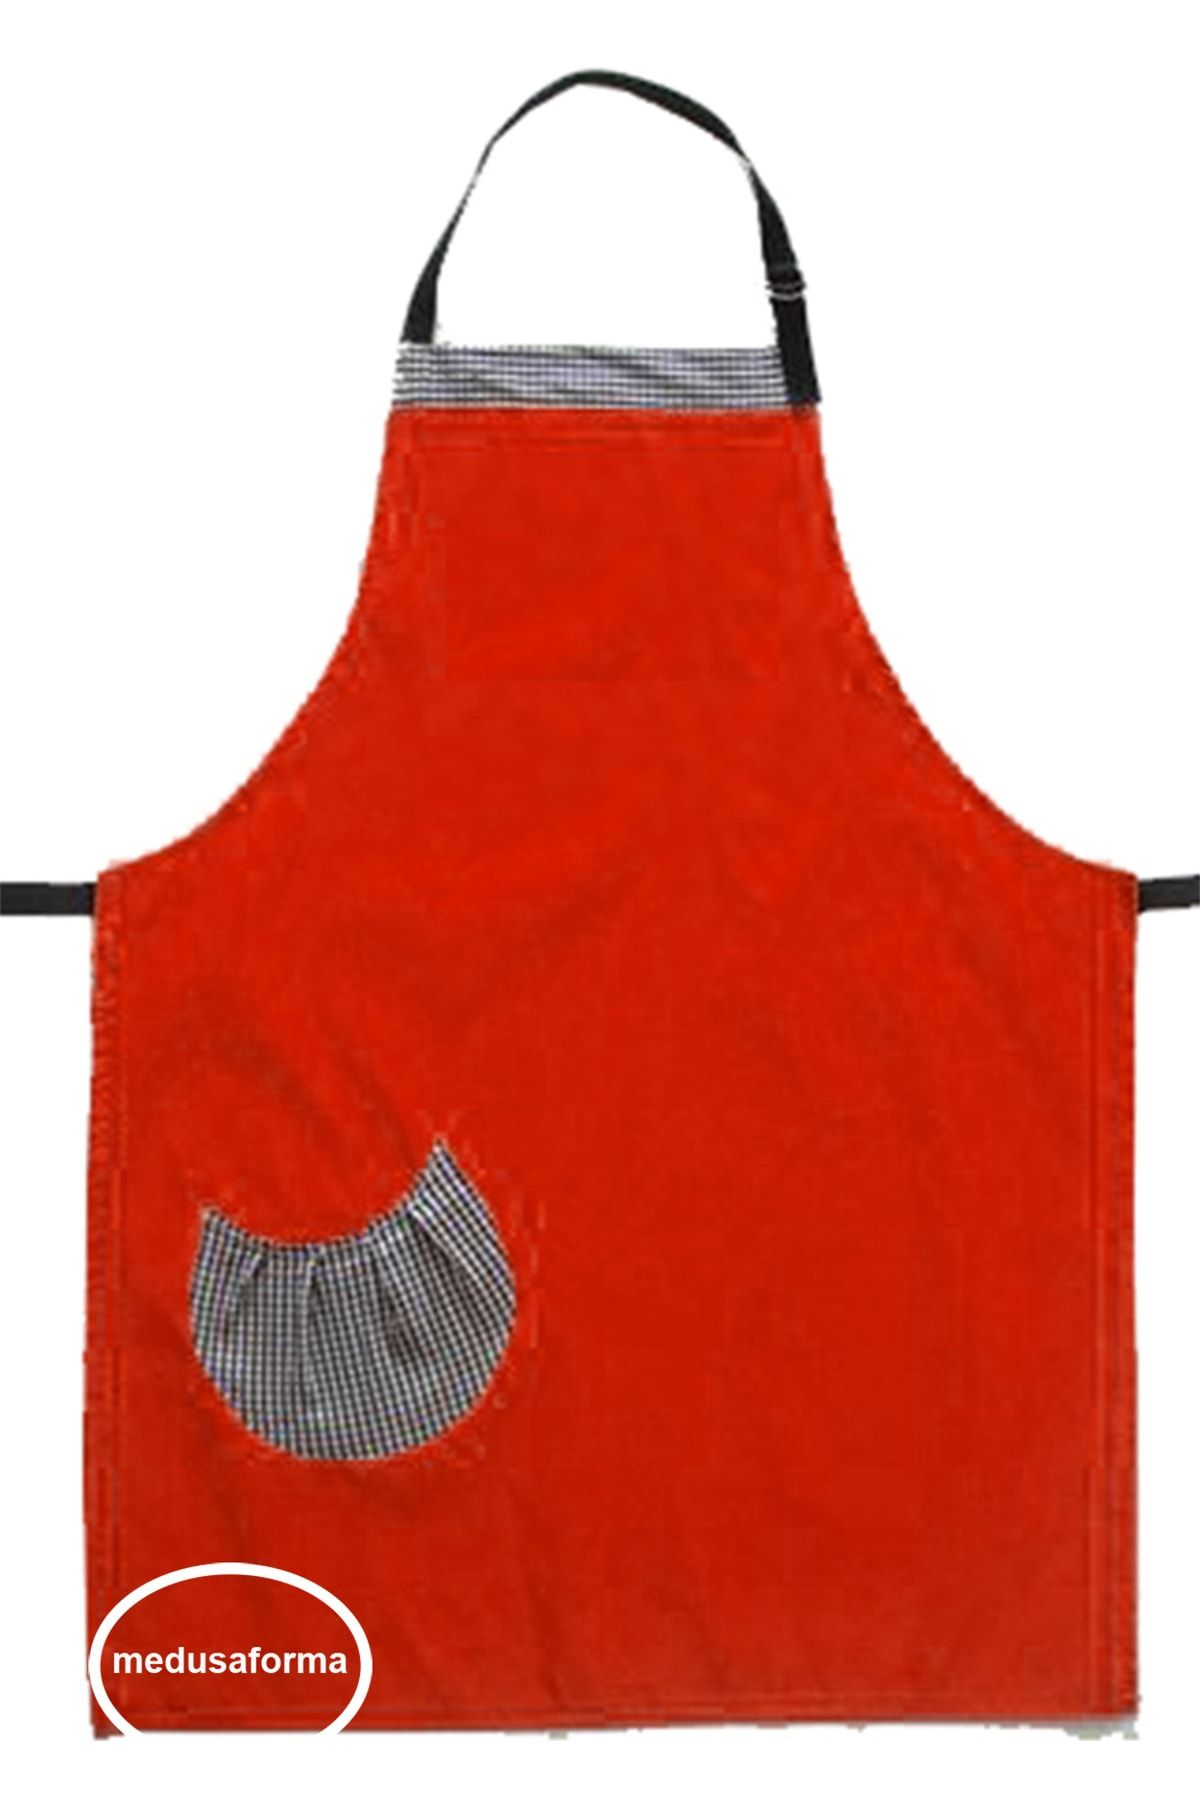 medusaforma Askılı Mutfak Önlüğü Master Chef Cafe Restaurant Şef Garson Aşçı Kuaför Barista Önlük - Kırmızı